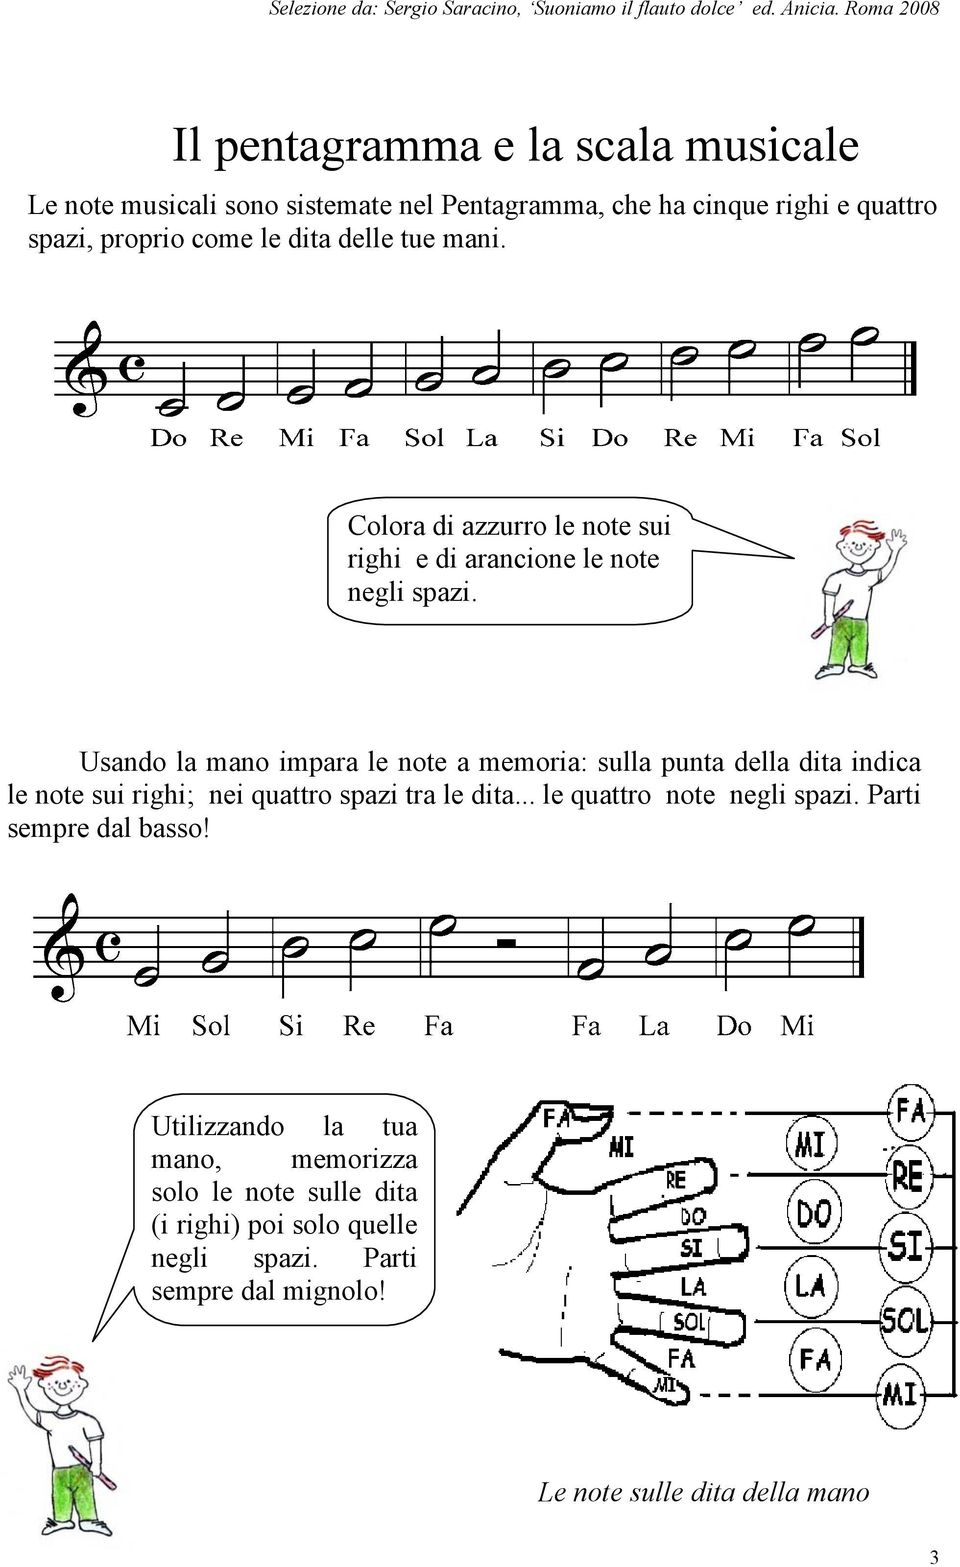 Usando la mano impara le note a memoria: sulla punta della dita indica le note sui righi; nei quattro spazi tra le dita.